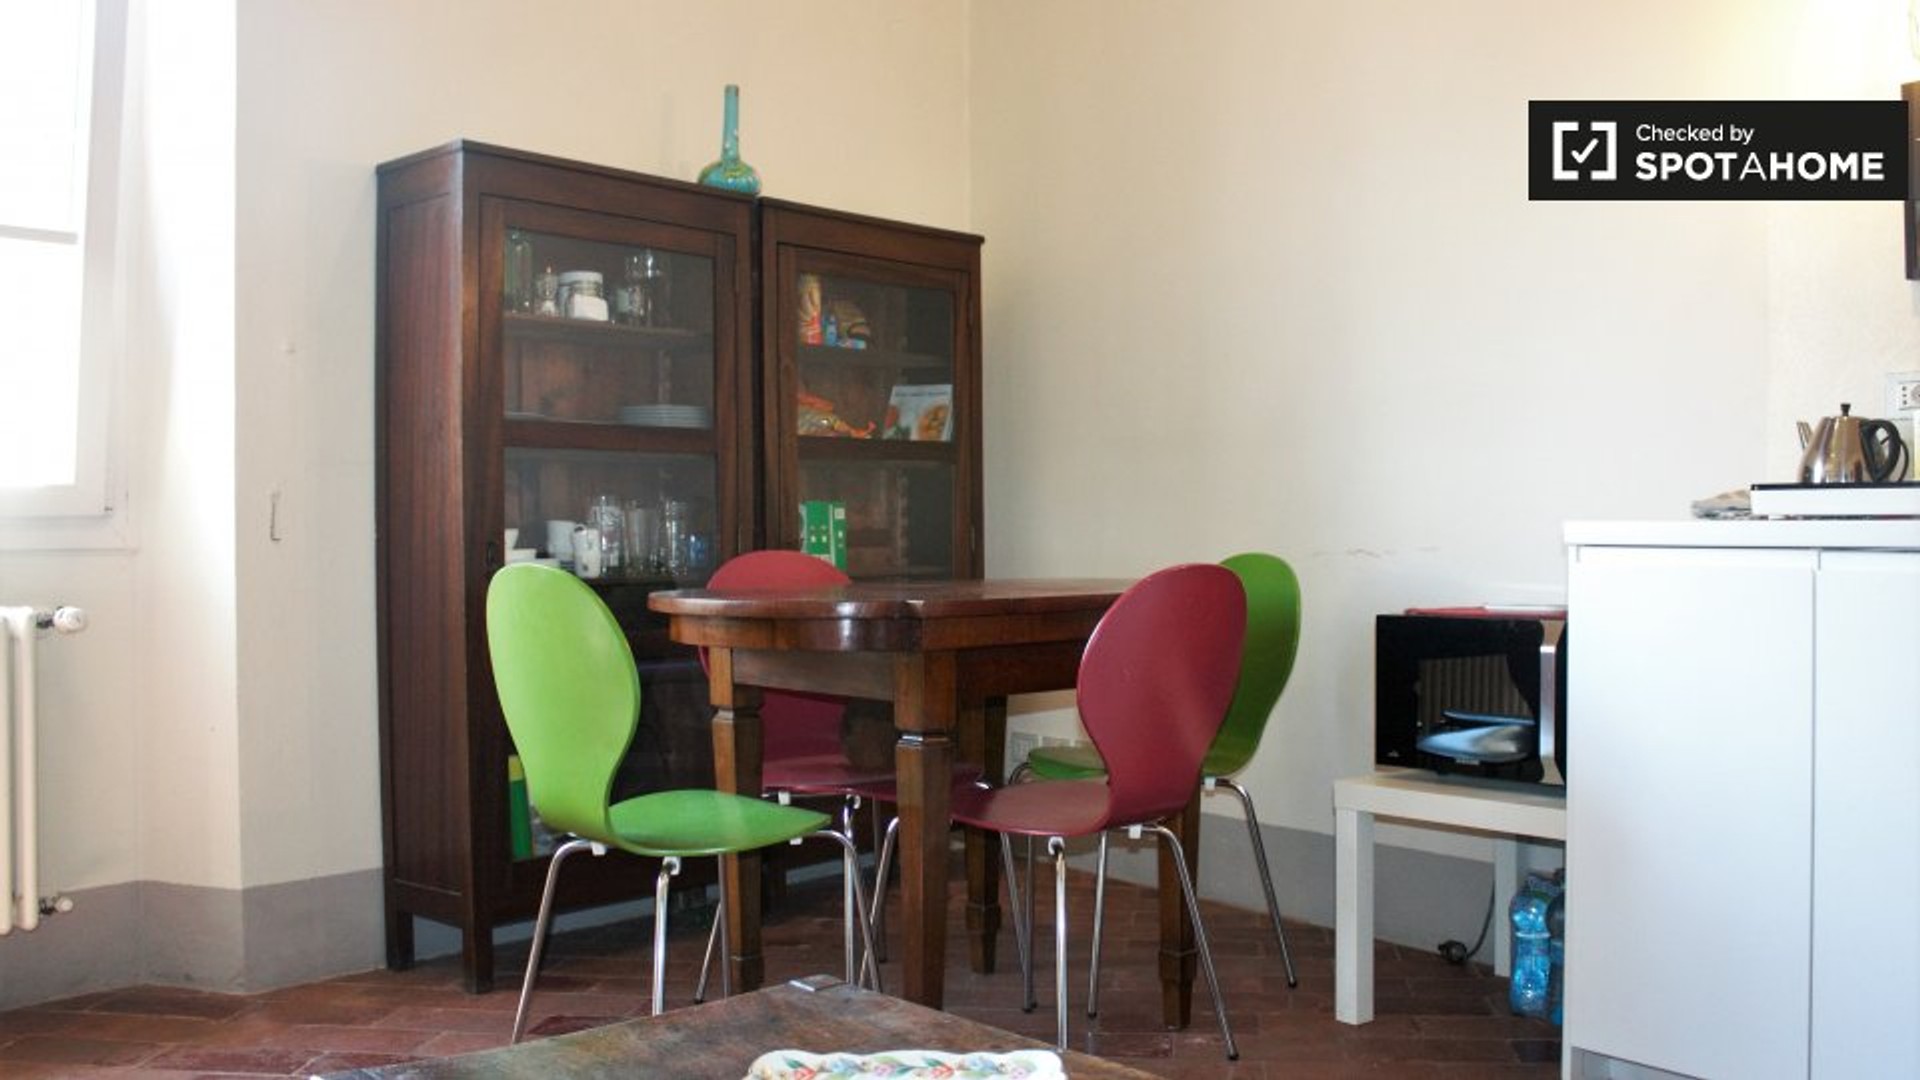 Alojamento com 2 quartos em Florença